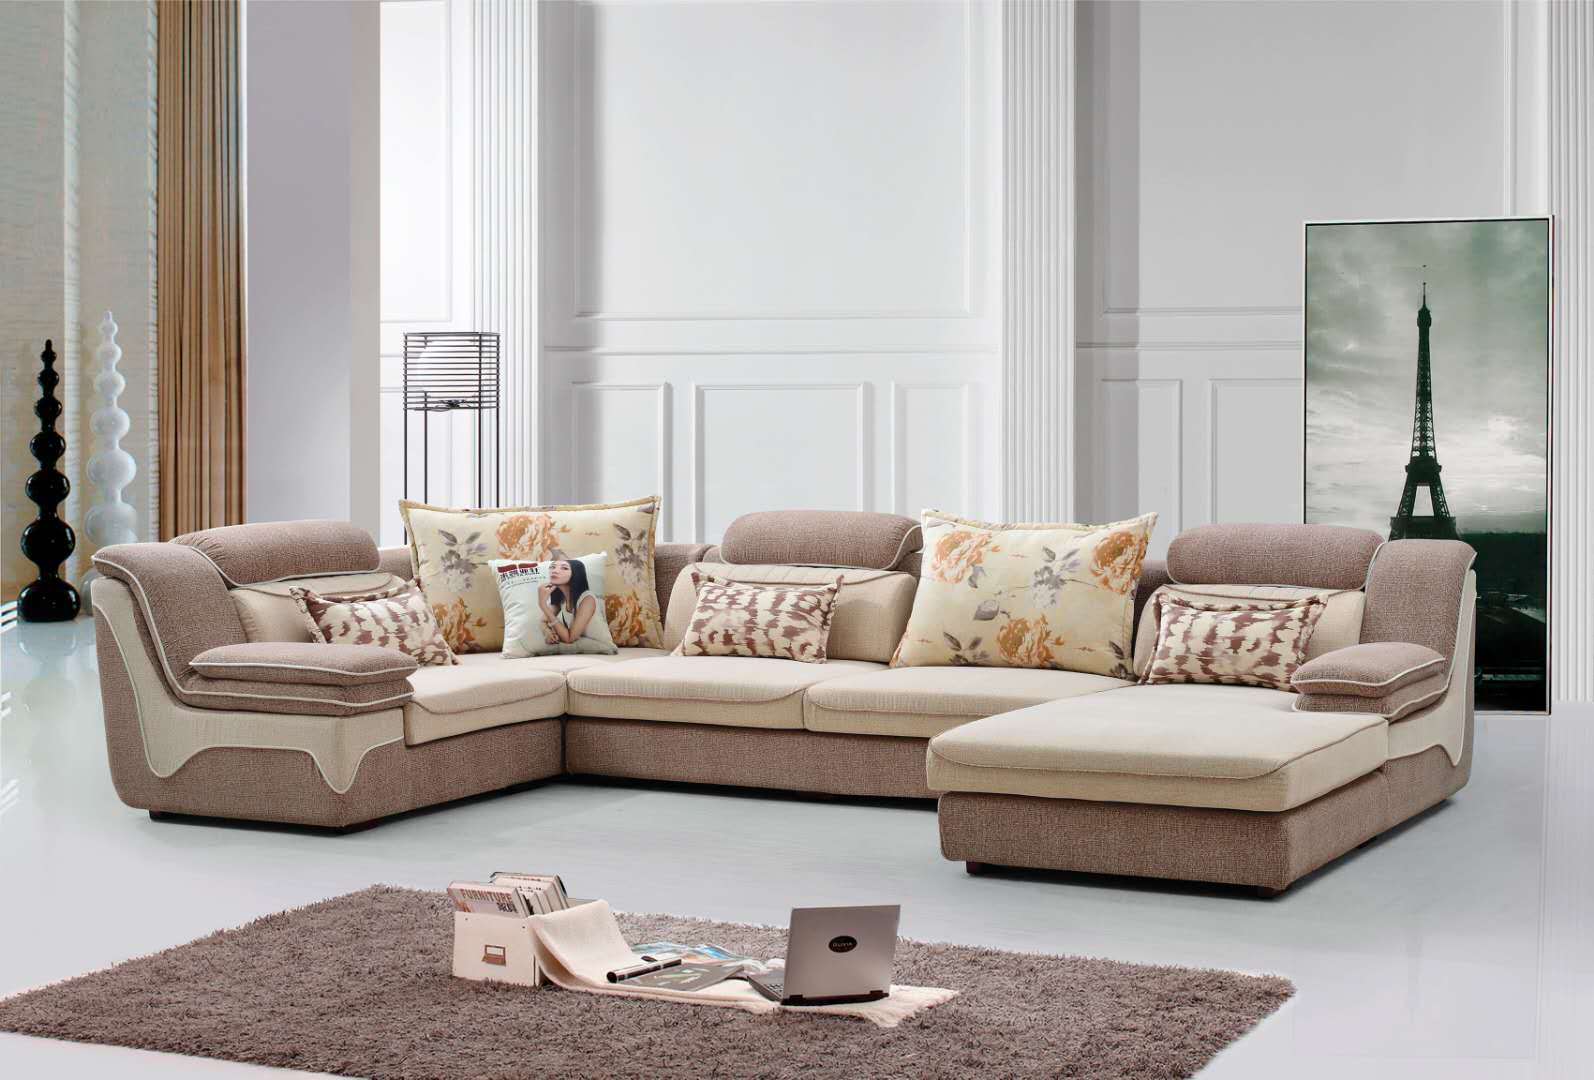 北欧沙发风格小户型客厅组合现代简约布艺沙发实木整装家具